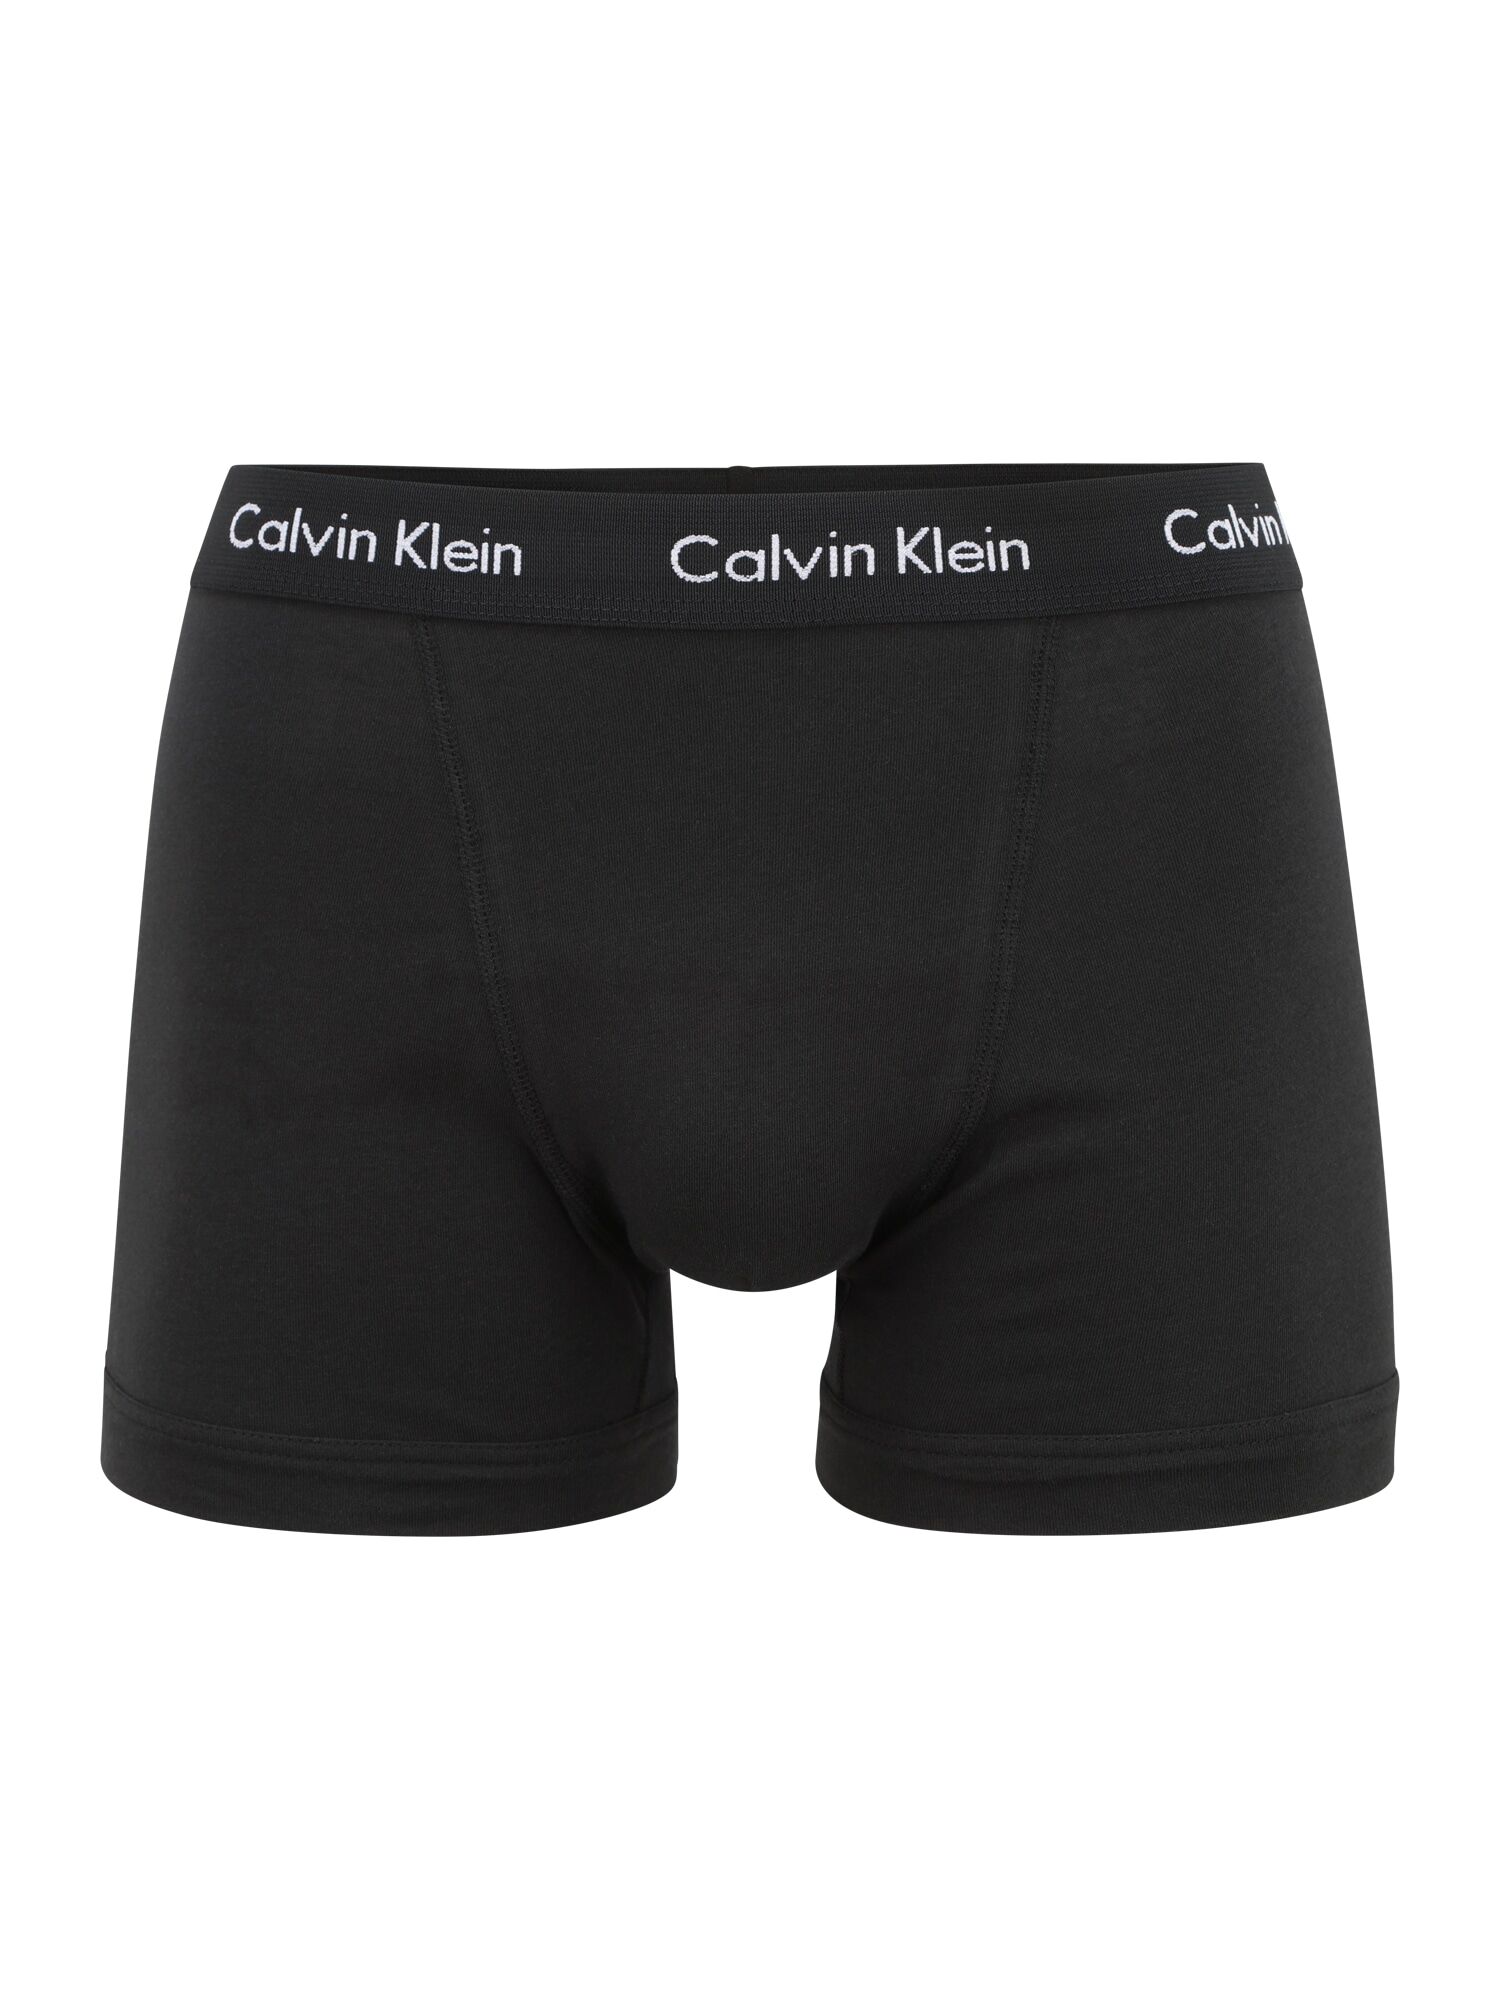 Calvin Klein Underwear Boxer Nero